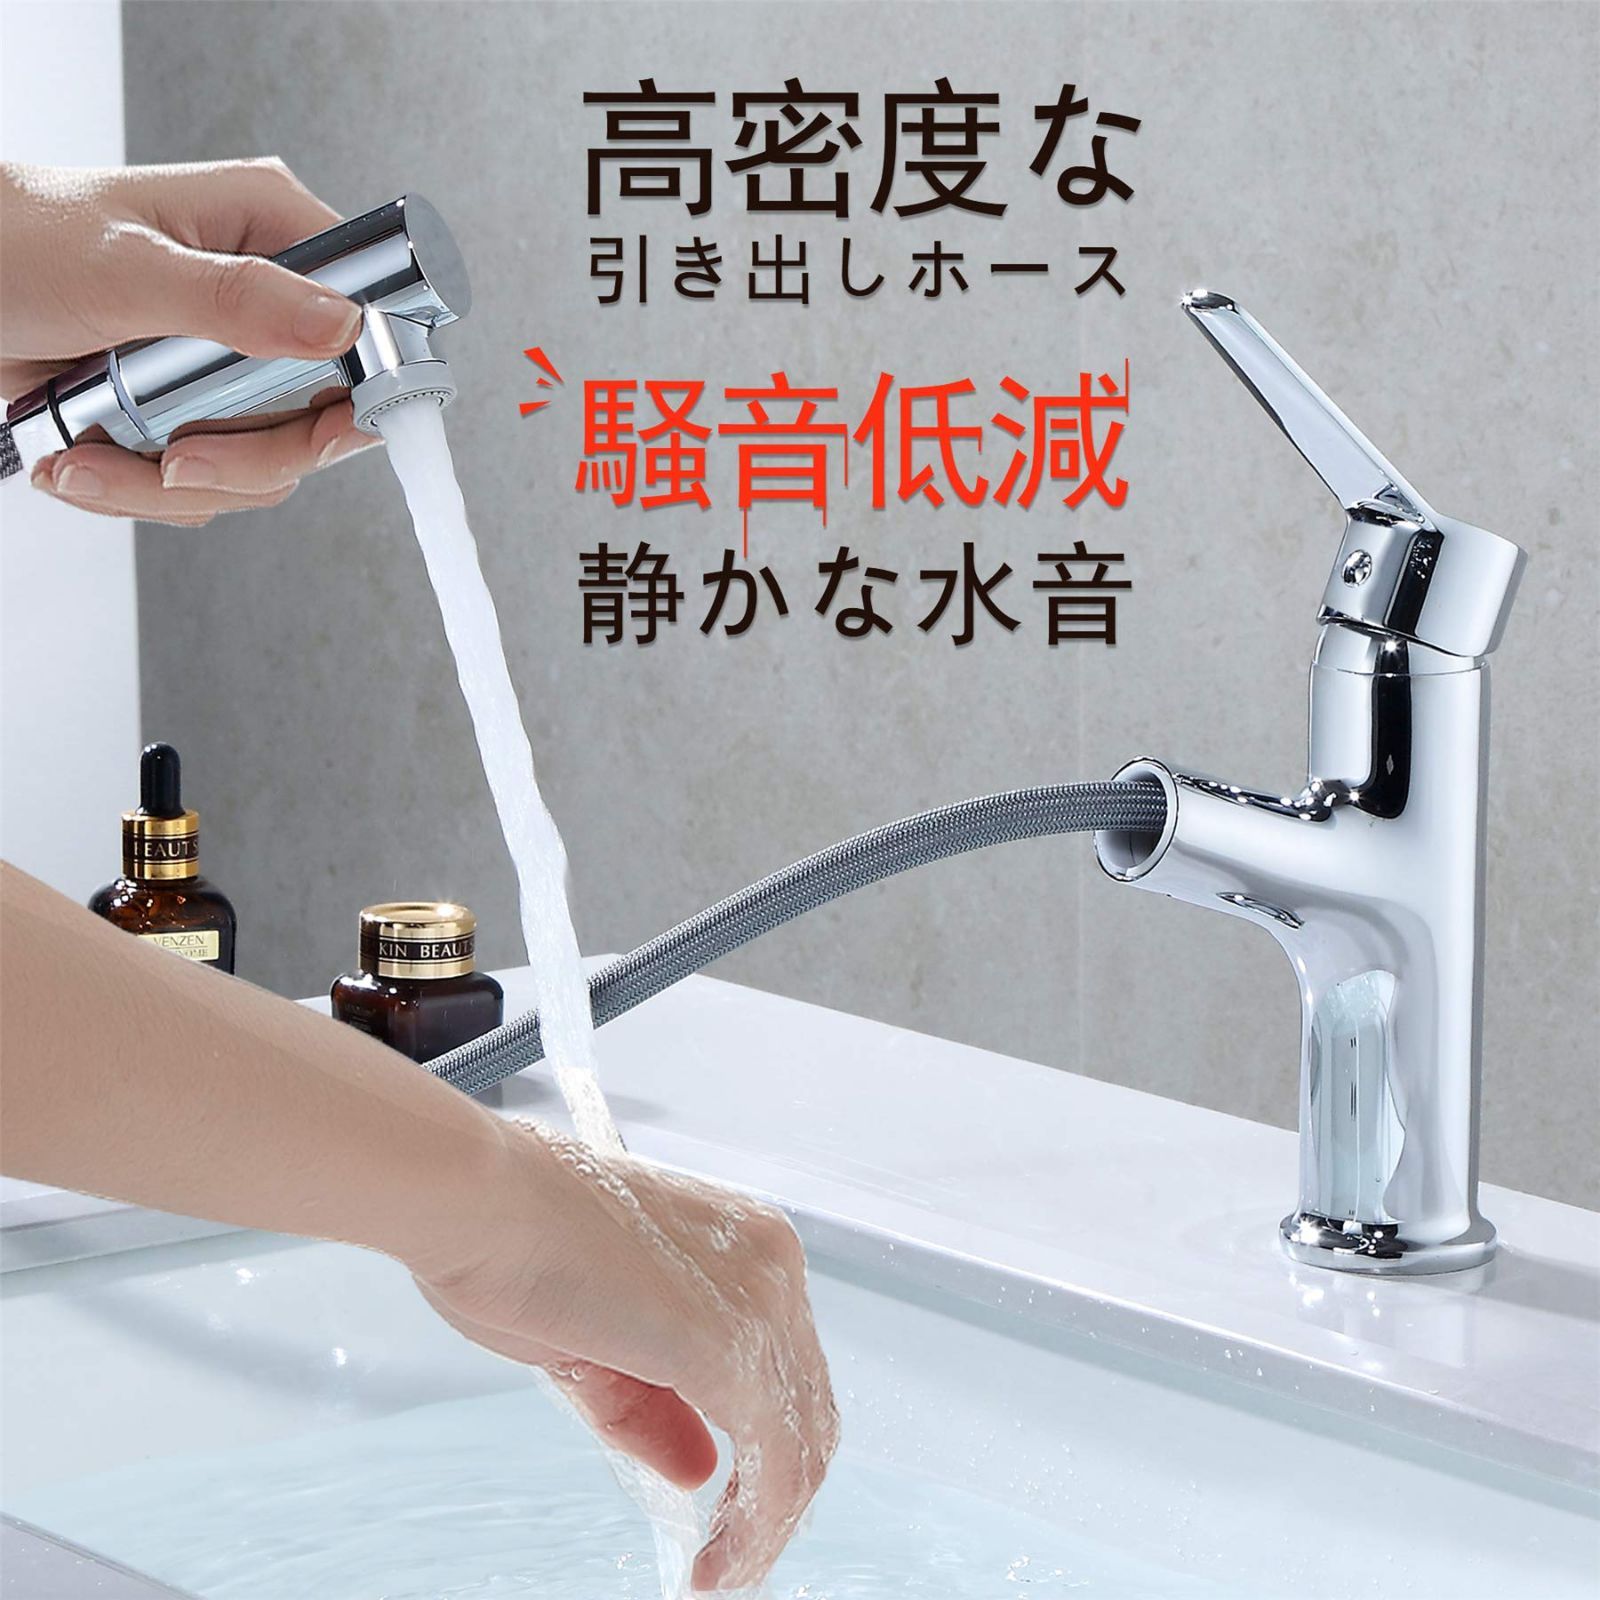 新品同様TOTO 浴室水栓 170mm 一般地用 TBV03401J 浴室用水栓、金具